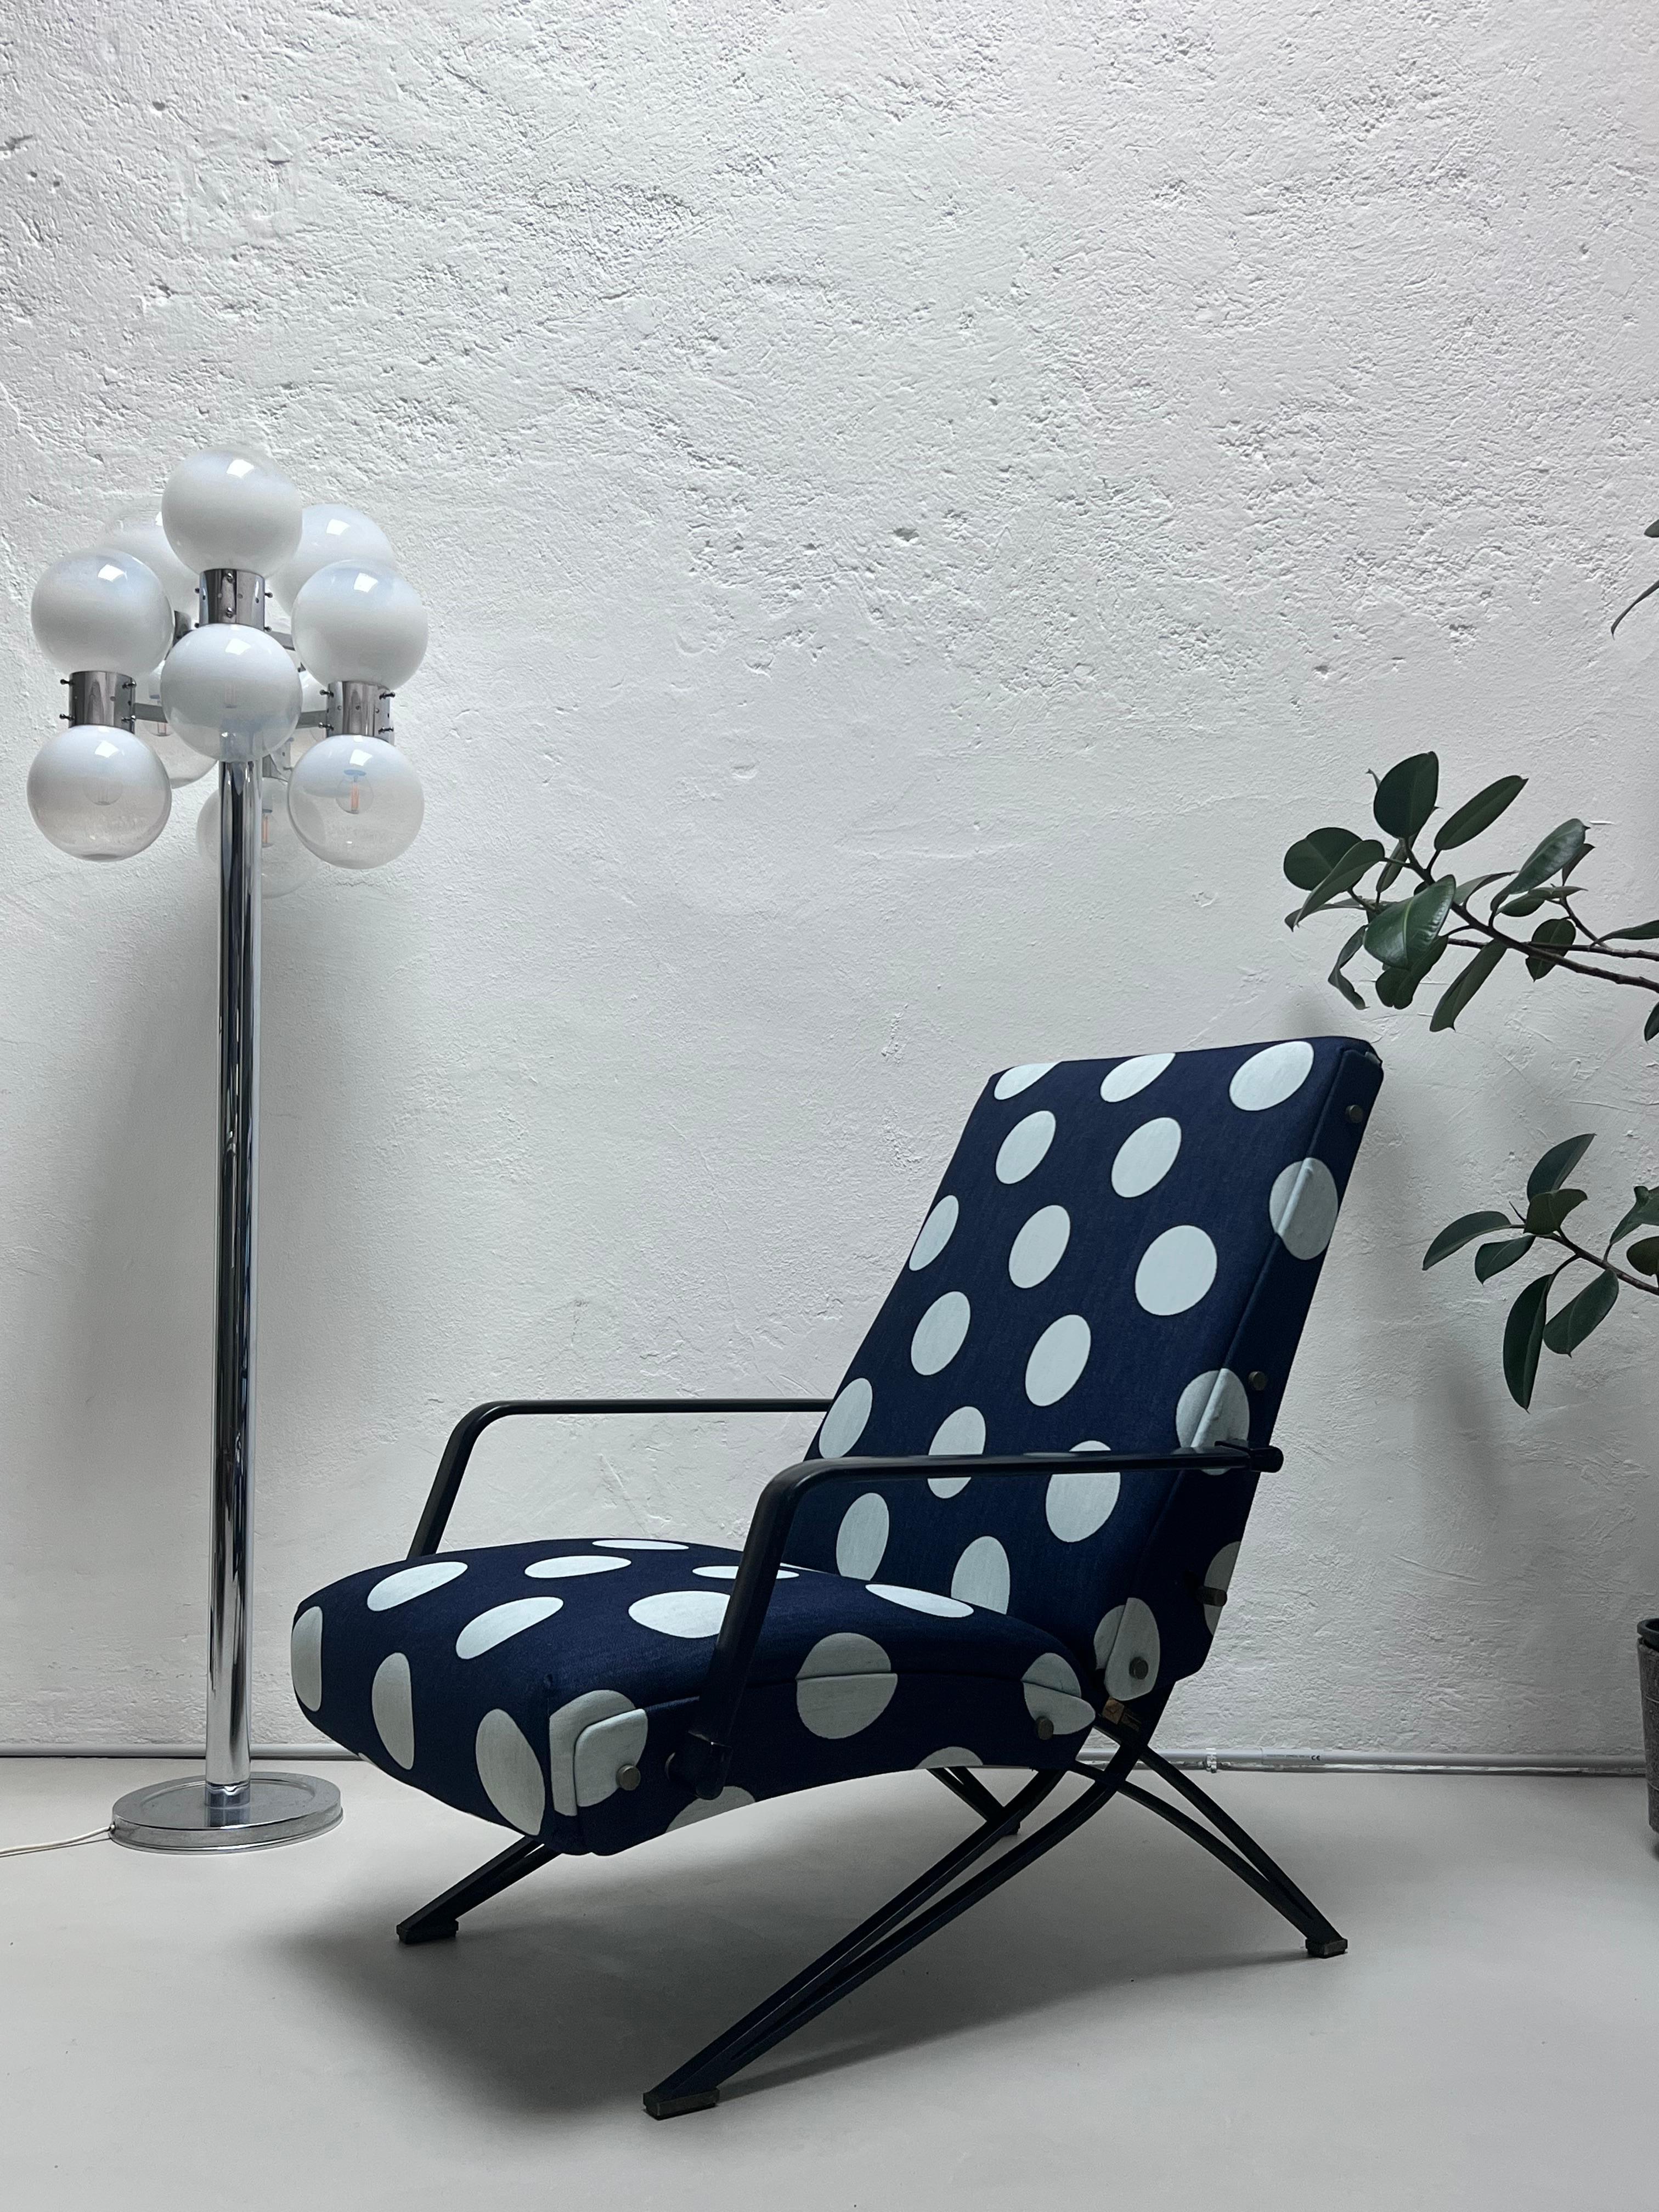 Formanova-Liegestuhl im Vintage-Stil aus den 1960er Jahren, entworfen von Giulio Moscatelli, vor kurzem professionell mit gepunktetem Denim-Stoff neu gepolstert. 

Möglicherweise nach dem Vorbild des Sessels P40 von Osvaldo Borsani, der etwa ein